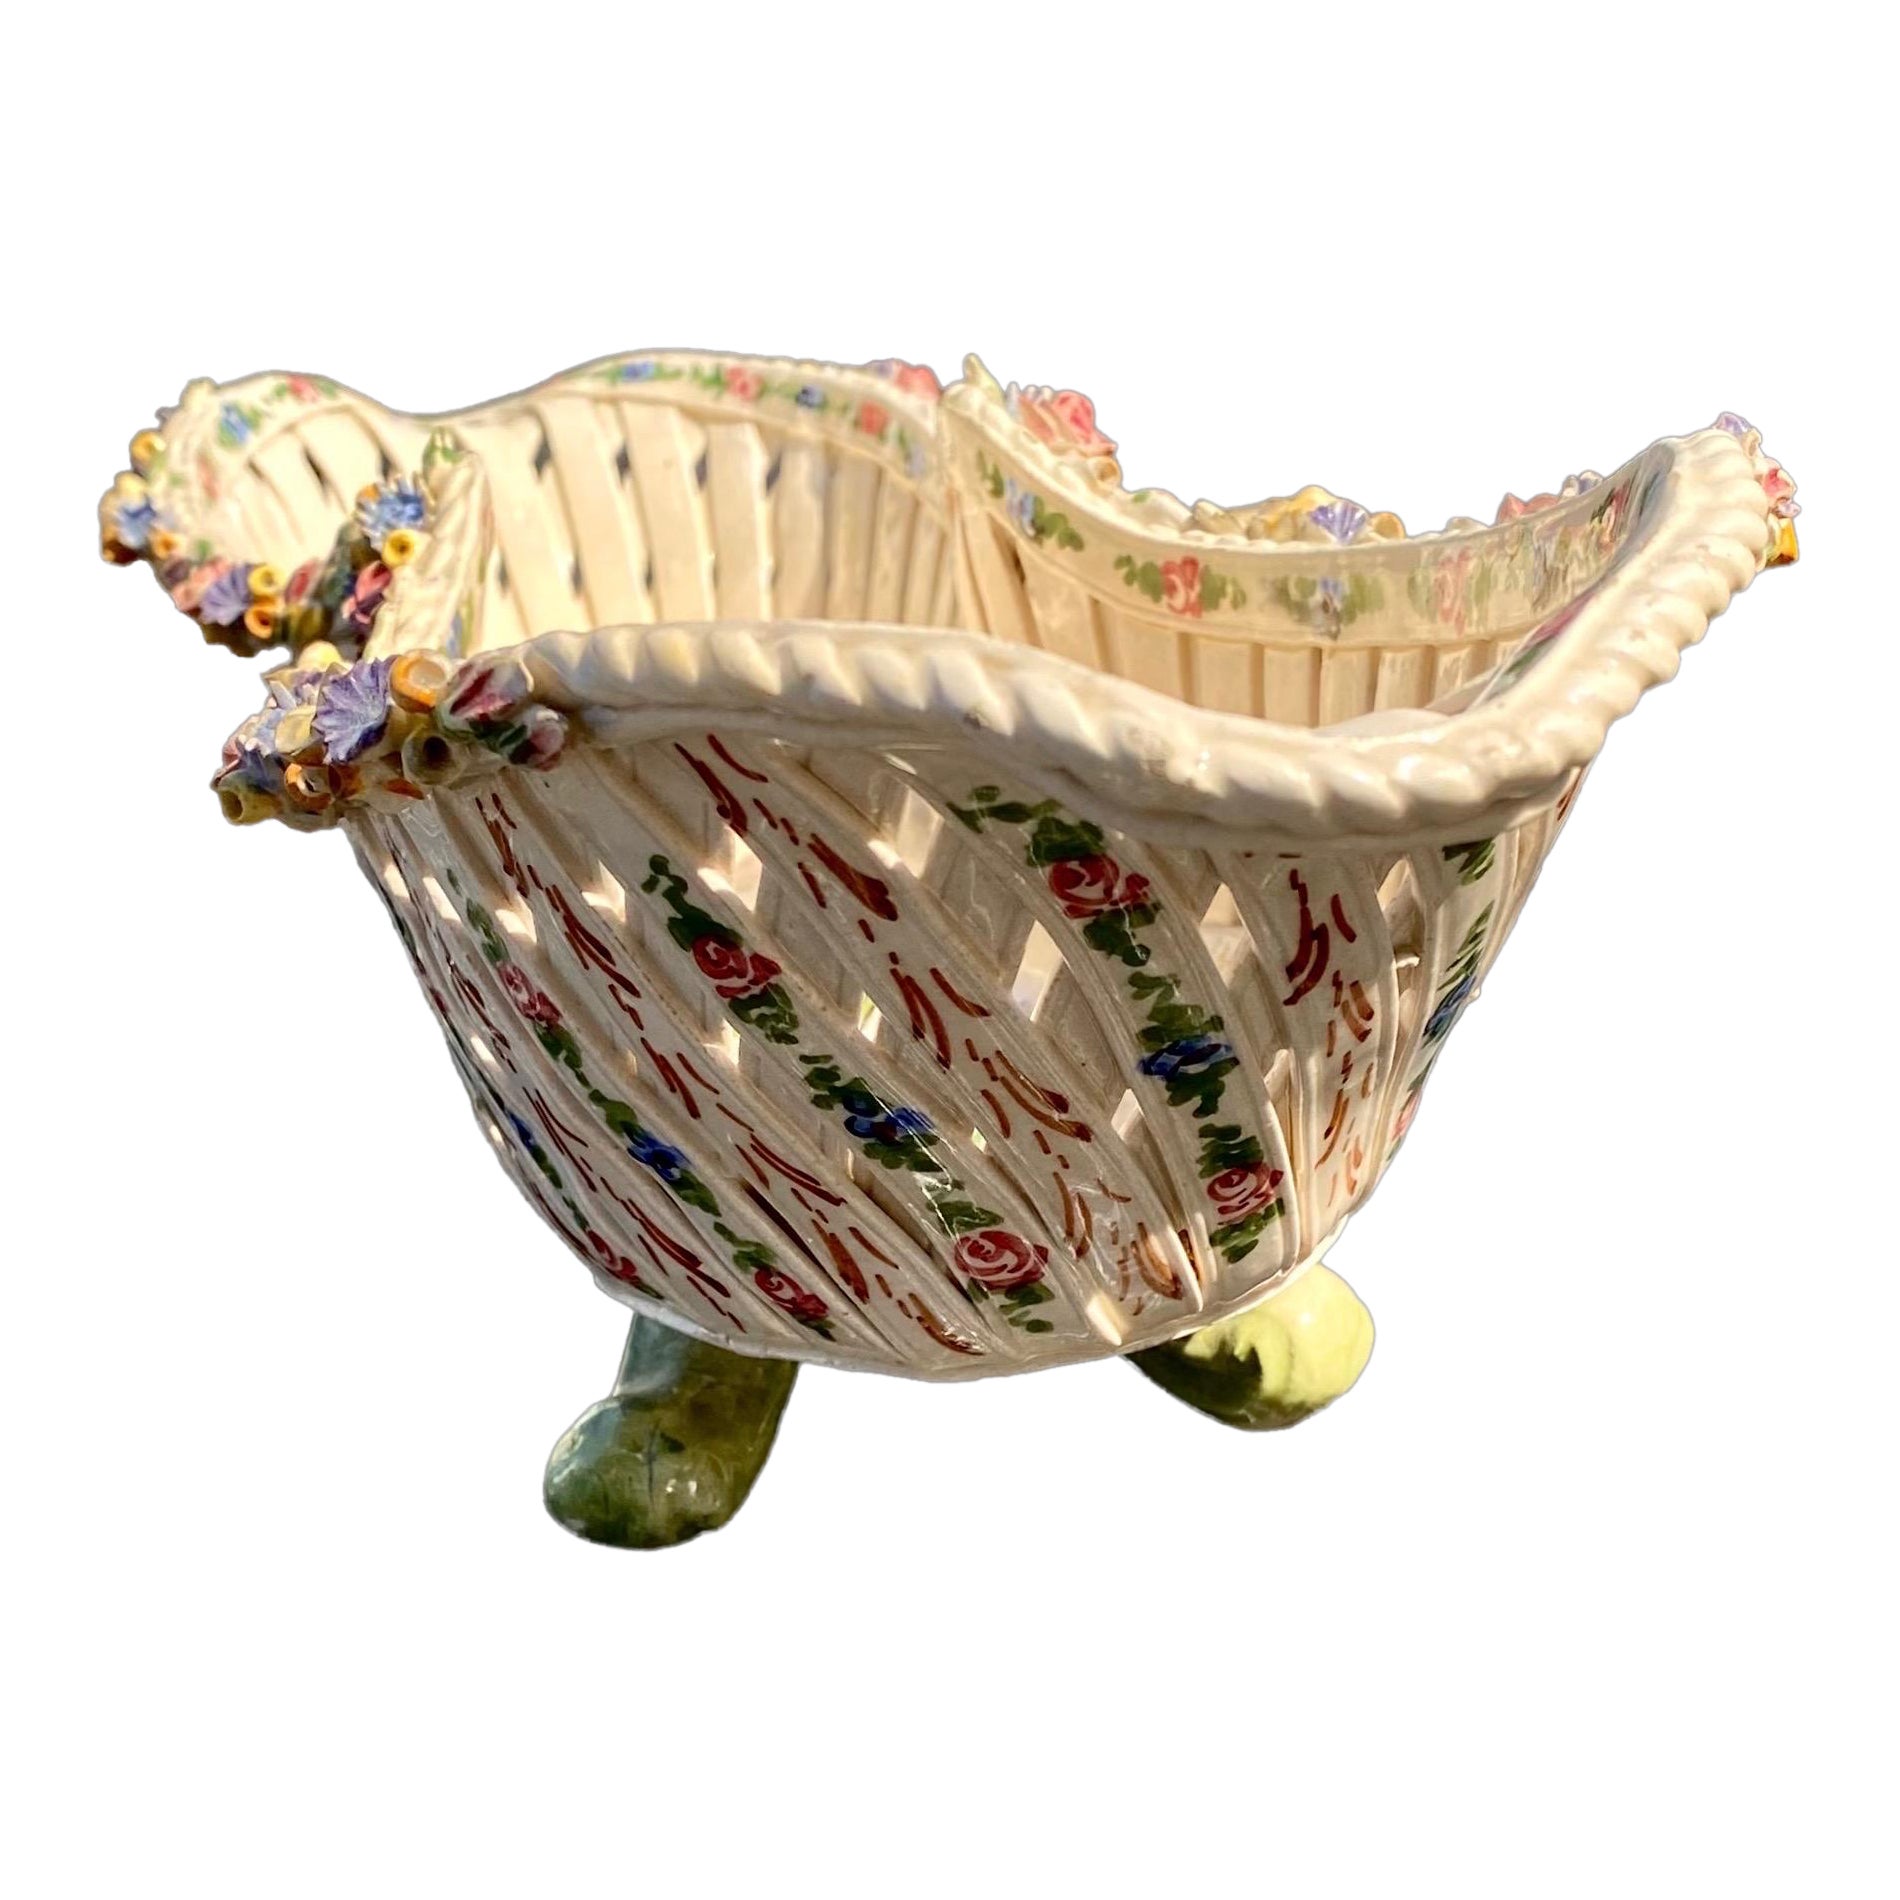 Remarquable porte-pain en poterie peint à la main, créé à Naples, en Italie, vers les années 1920. Il présente des guirlandes de fleurs appliquées et colorées autour du bord en forme de bateau, au-dessus d'un treillis peint et floral. Superbe